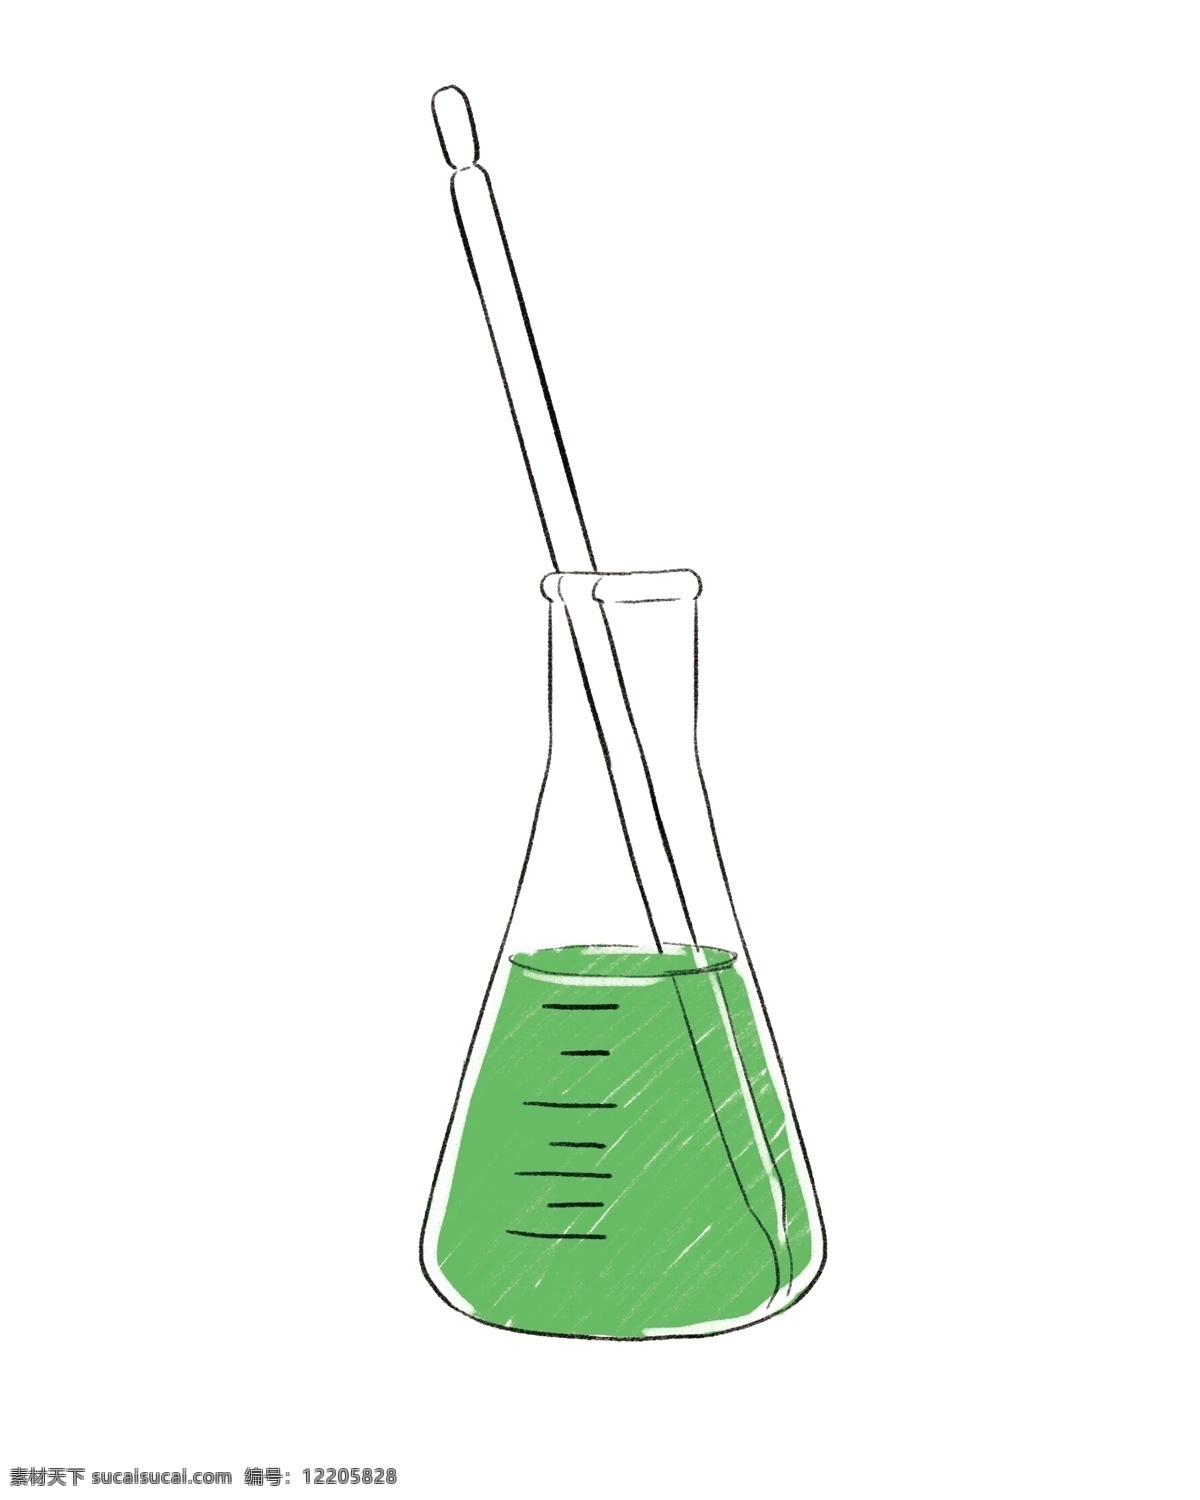 绿色 液体 药水 插图 立体瓶子 化学瓶子 绿色药水 做化学实验 化学教学 实验试管 药物插画 化学专用